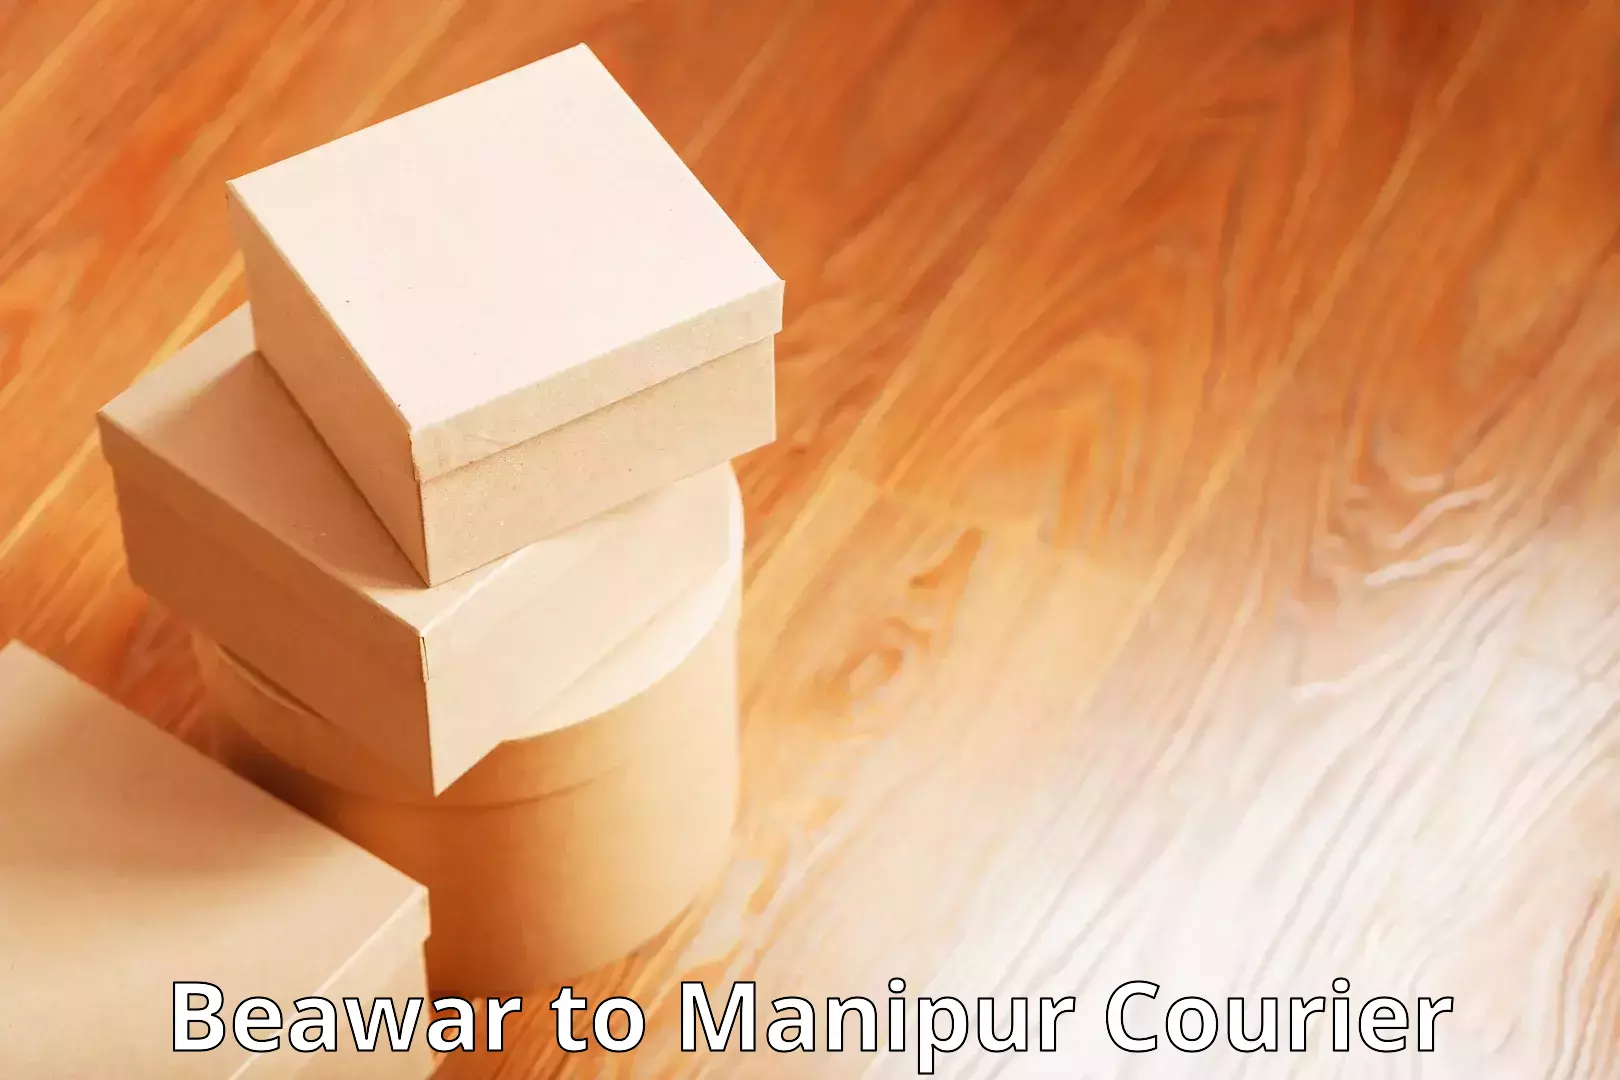 Bulk order courier Beawar to Manipur